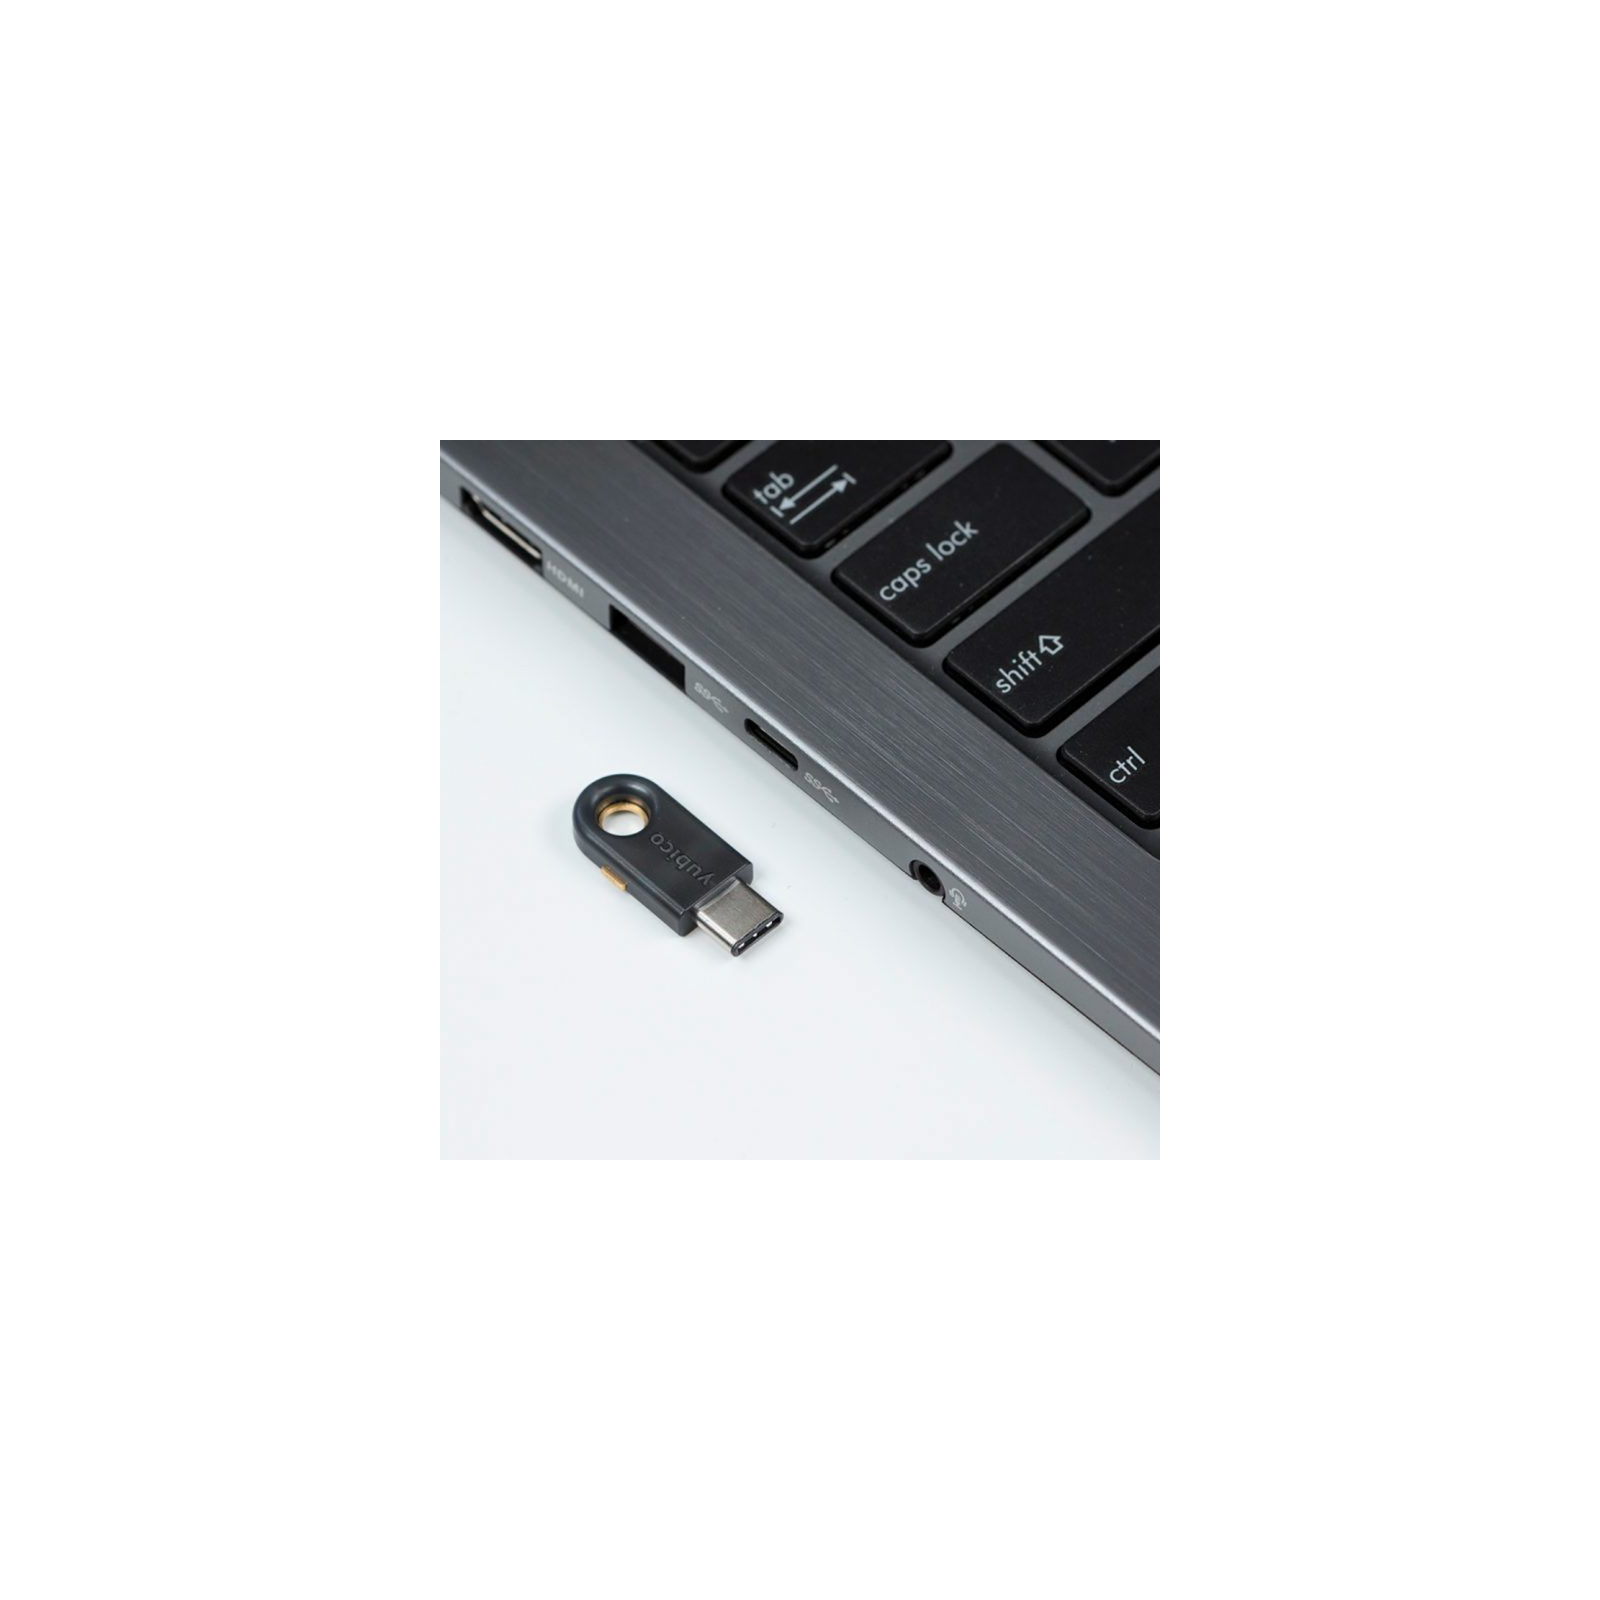 Апаратний ключ безпеки Yubico YubiKey 5C (YubiKey_5C) зображення 4